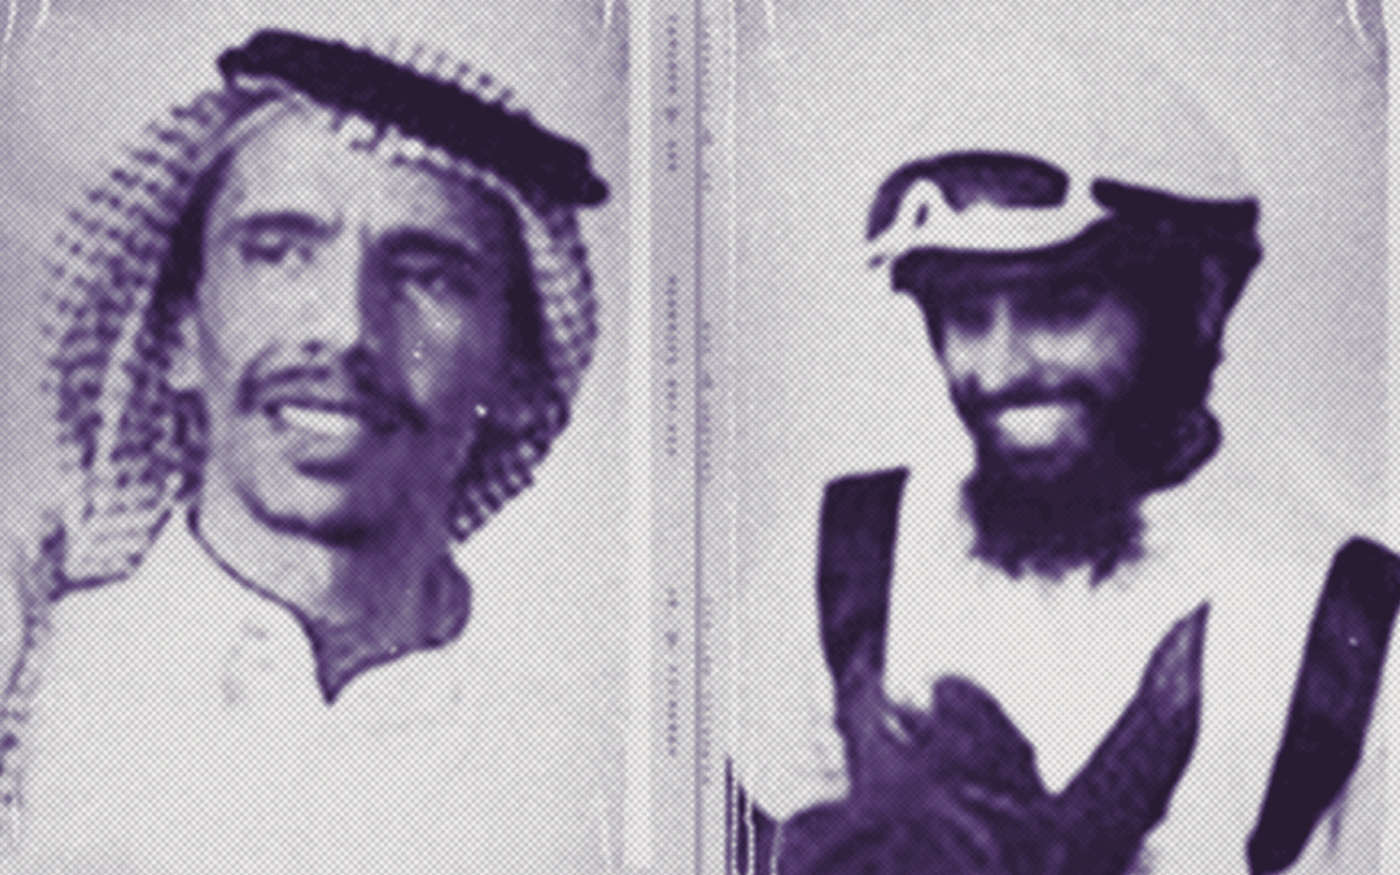 Abdullah Dukhail al-Howeiti (à gauche) et Abdulilah al-Howeiti (à droite) ont été condamnés le mois dernier à 50 ans de prison assortis de 50 ans d’interdiction de voyager (Twitter/Alqst)